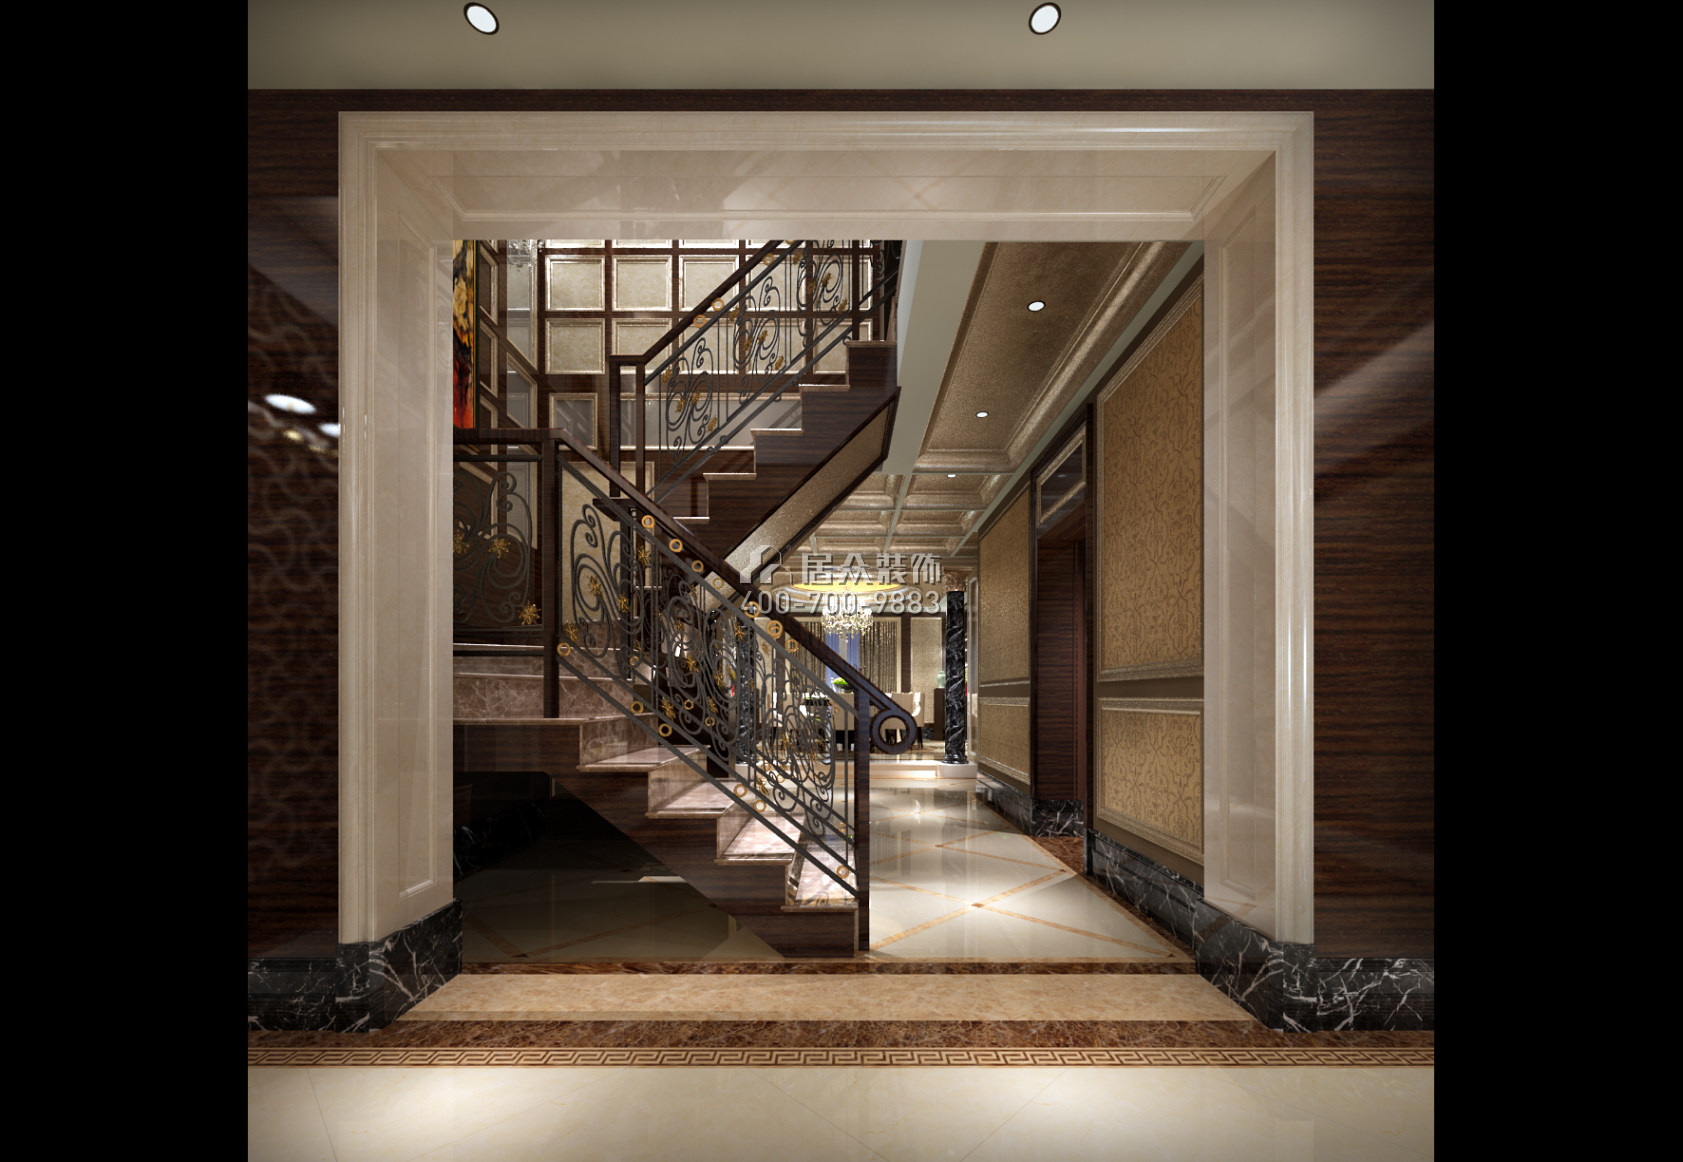 波托菲諾純水岸520平方米新古典風格復式戶型樓梯裝修效果圖